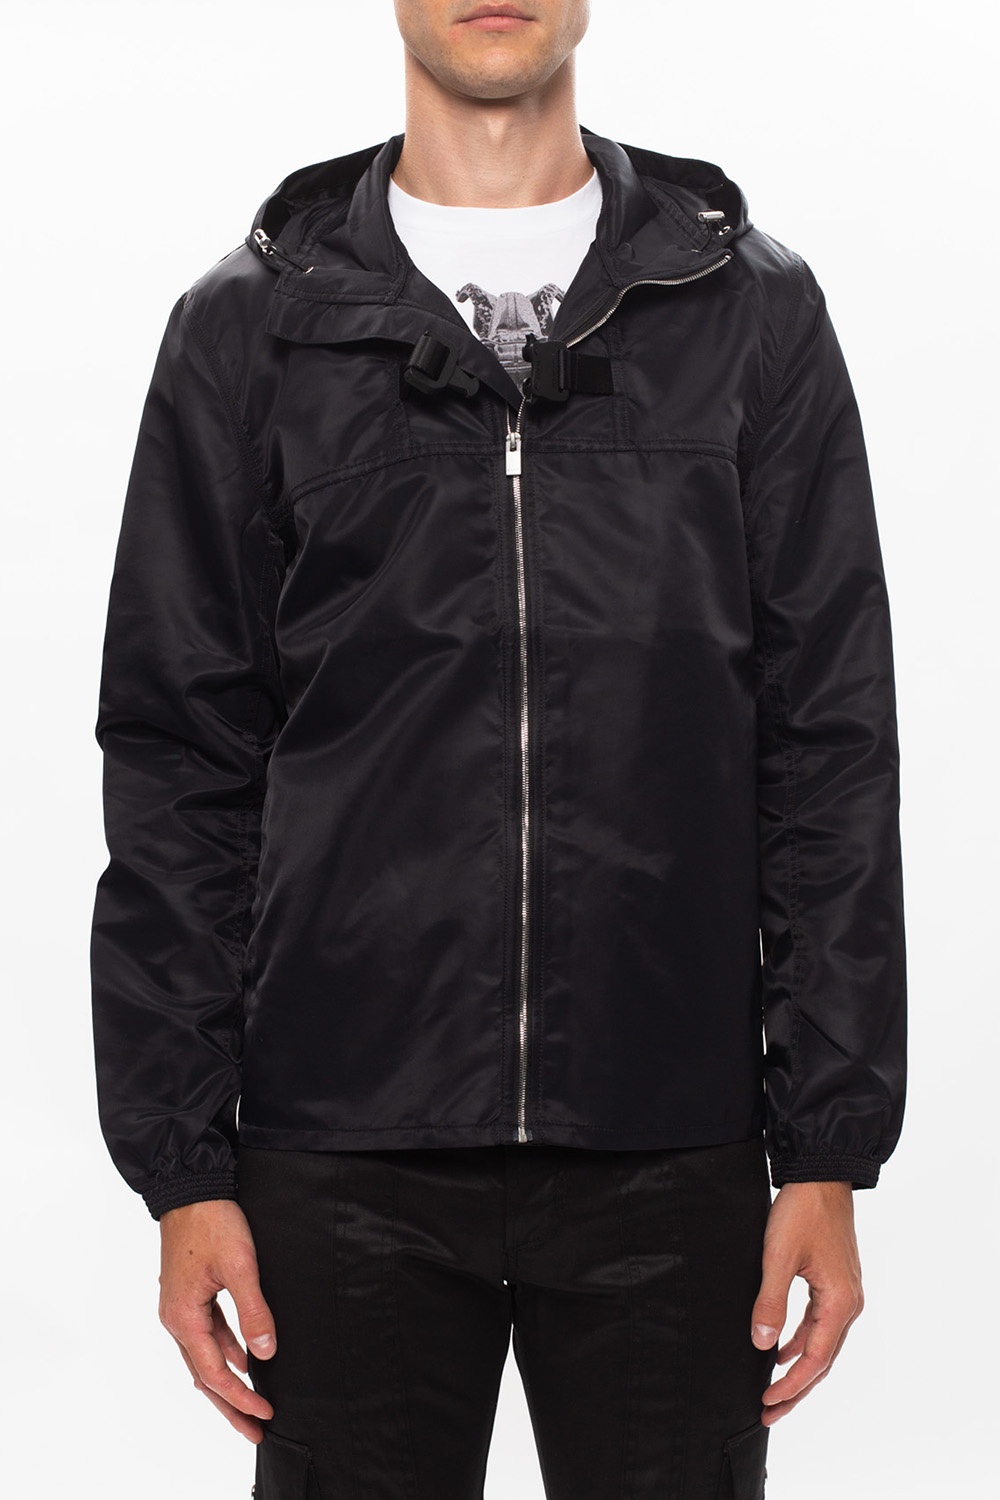 1017 ALYX 9SM Jacket with signature buckle | Men's Clothing | Vitkac